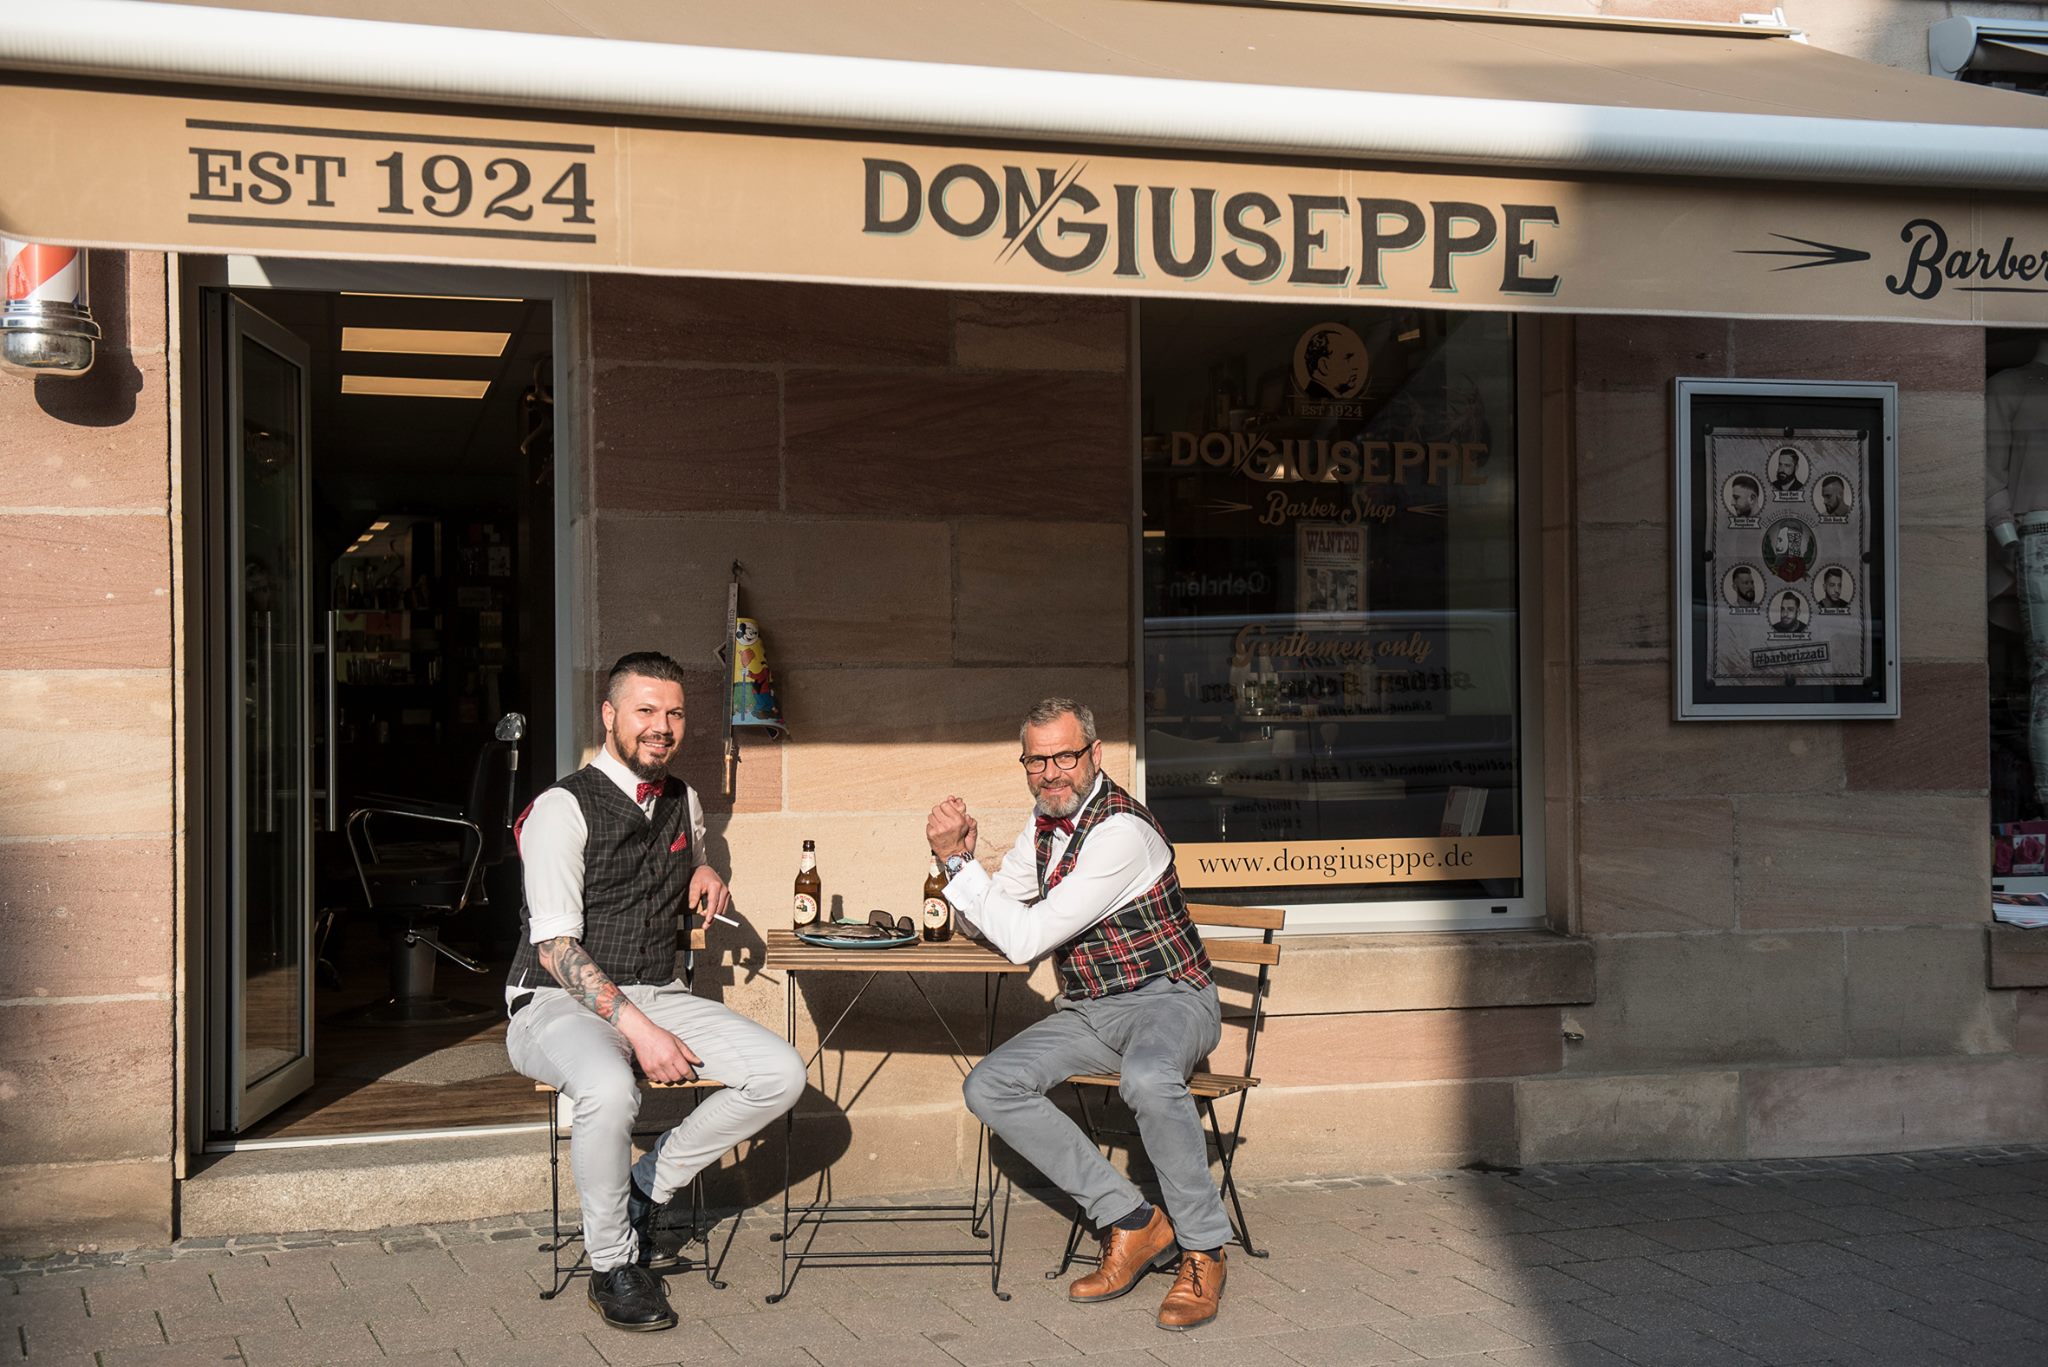 Don Giuseppe, der Barbershop in Fürth